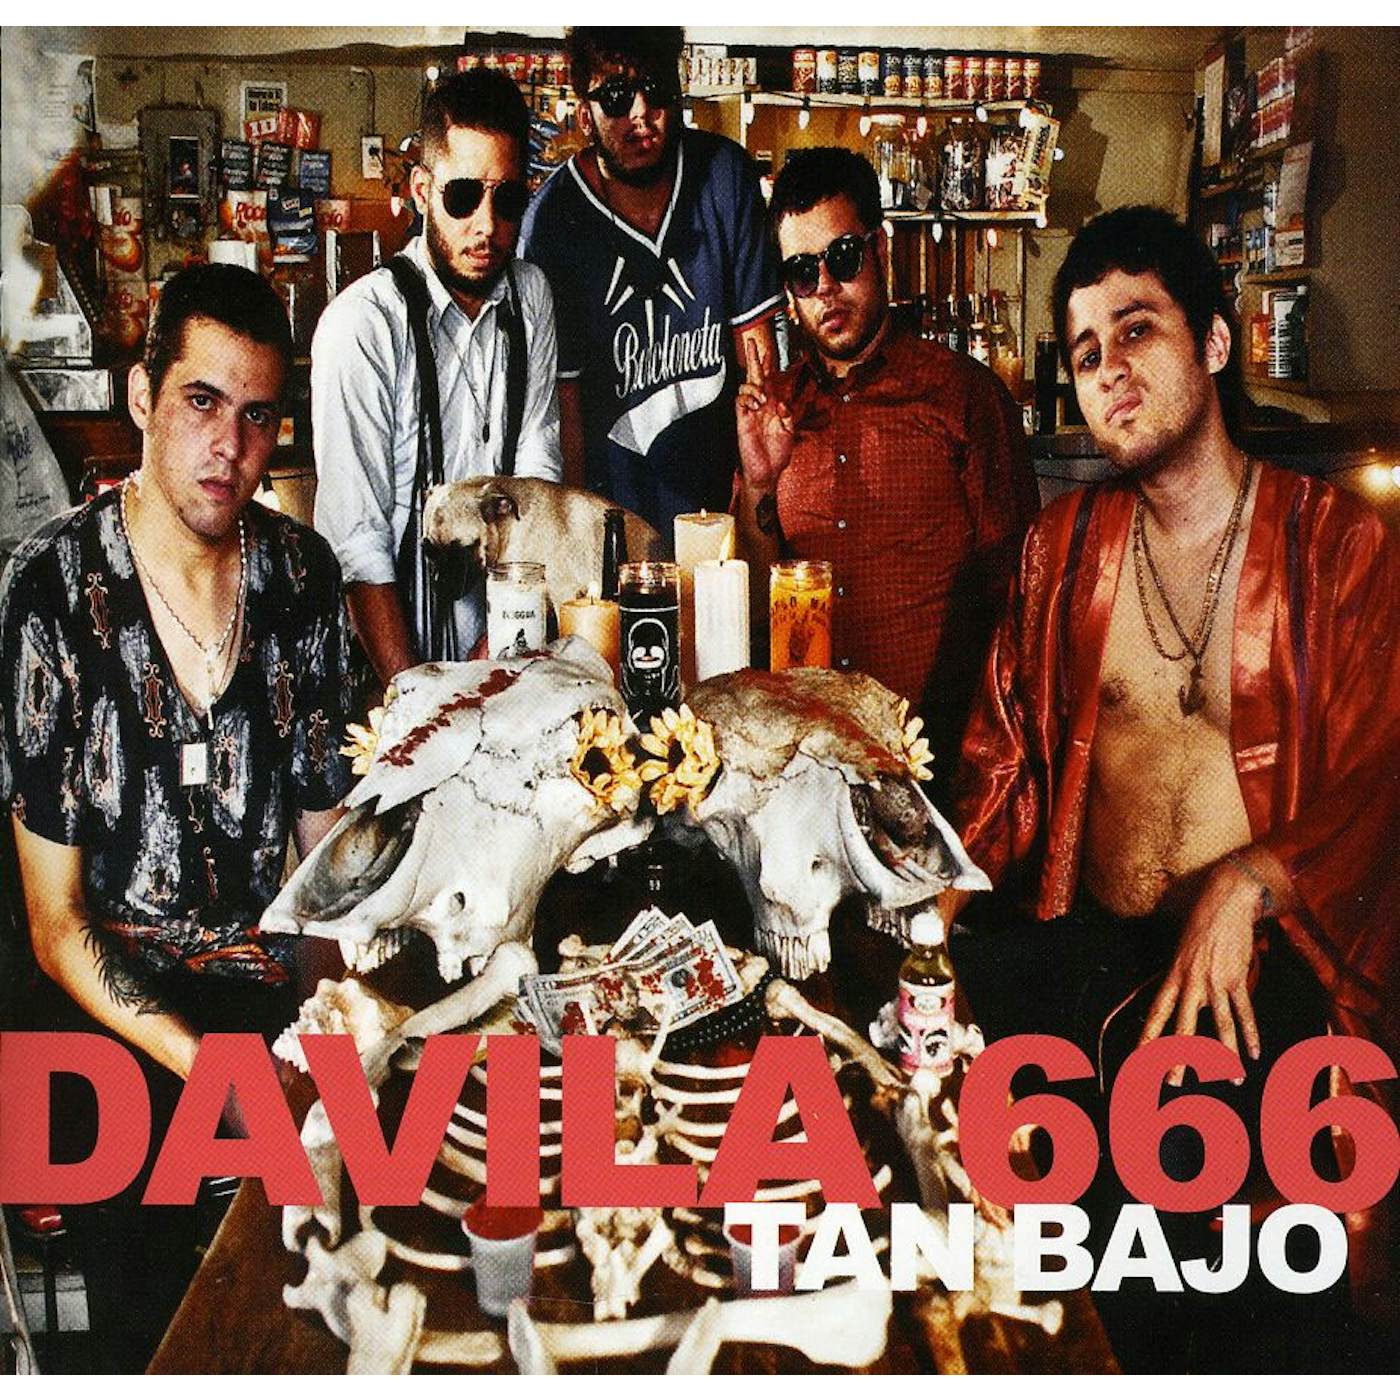 Davila 666 TAN BAJO CD